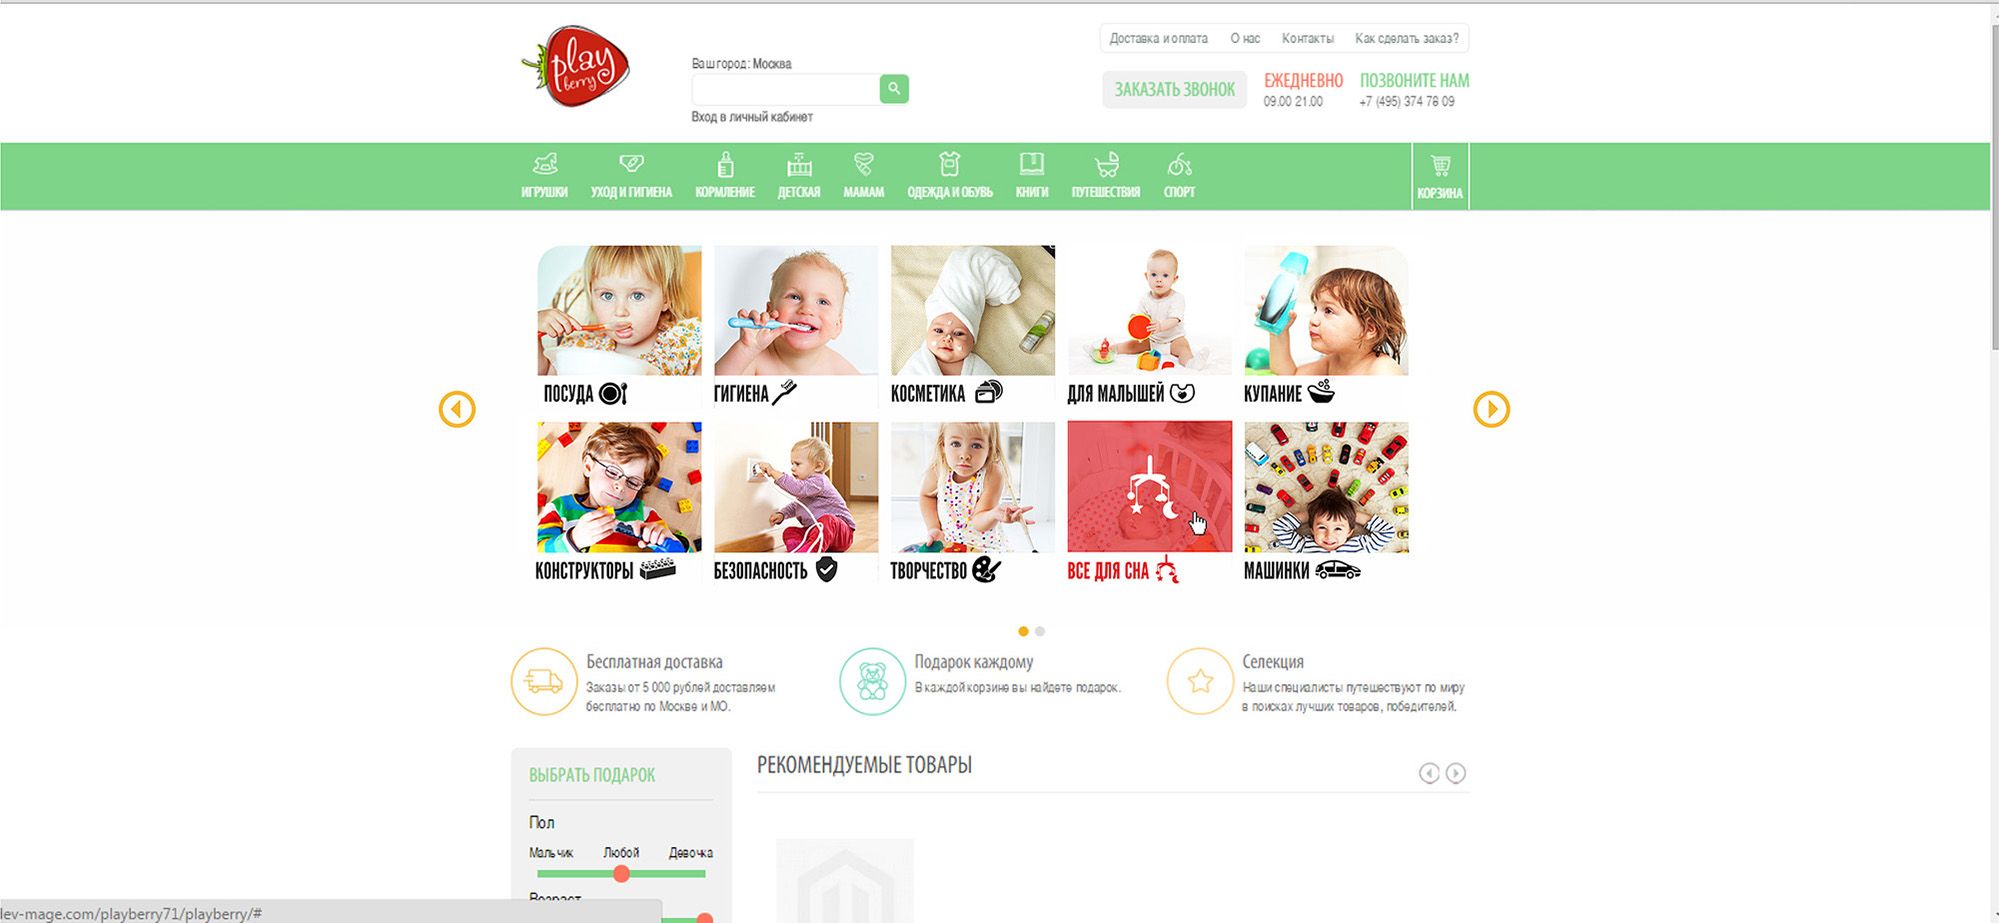 Категории товаров для детского магазина - дизайнер IgorTsar